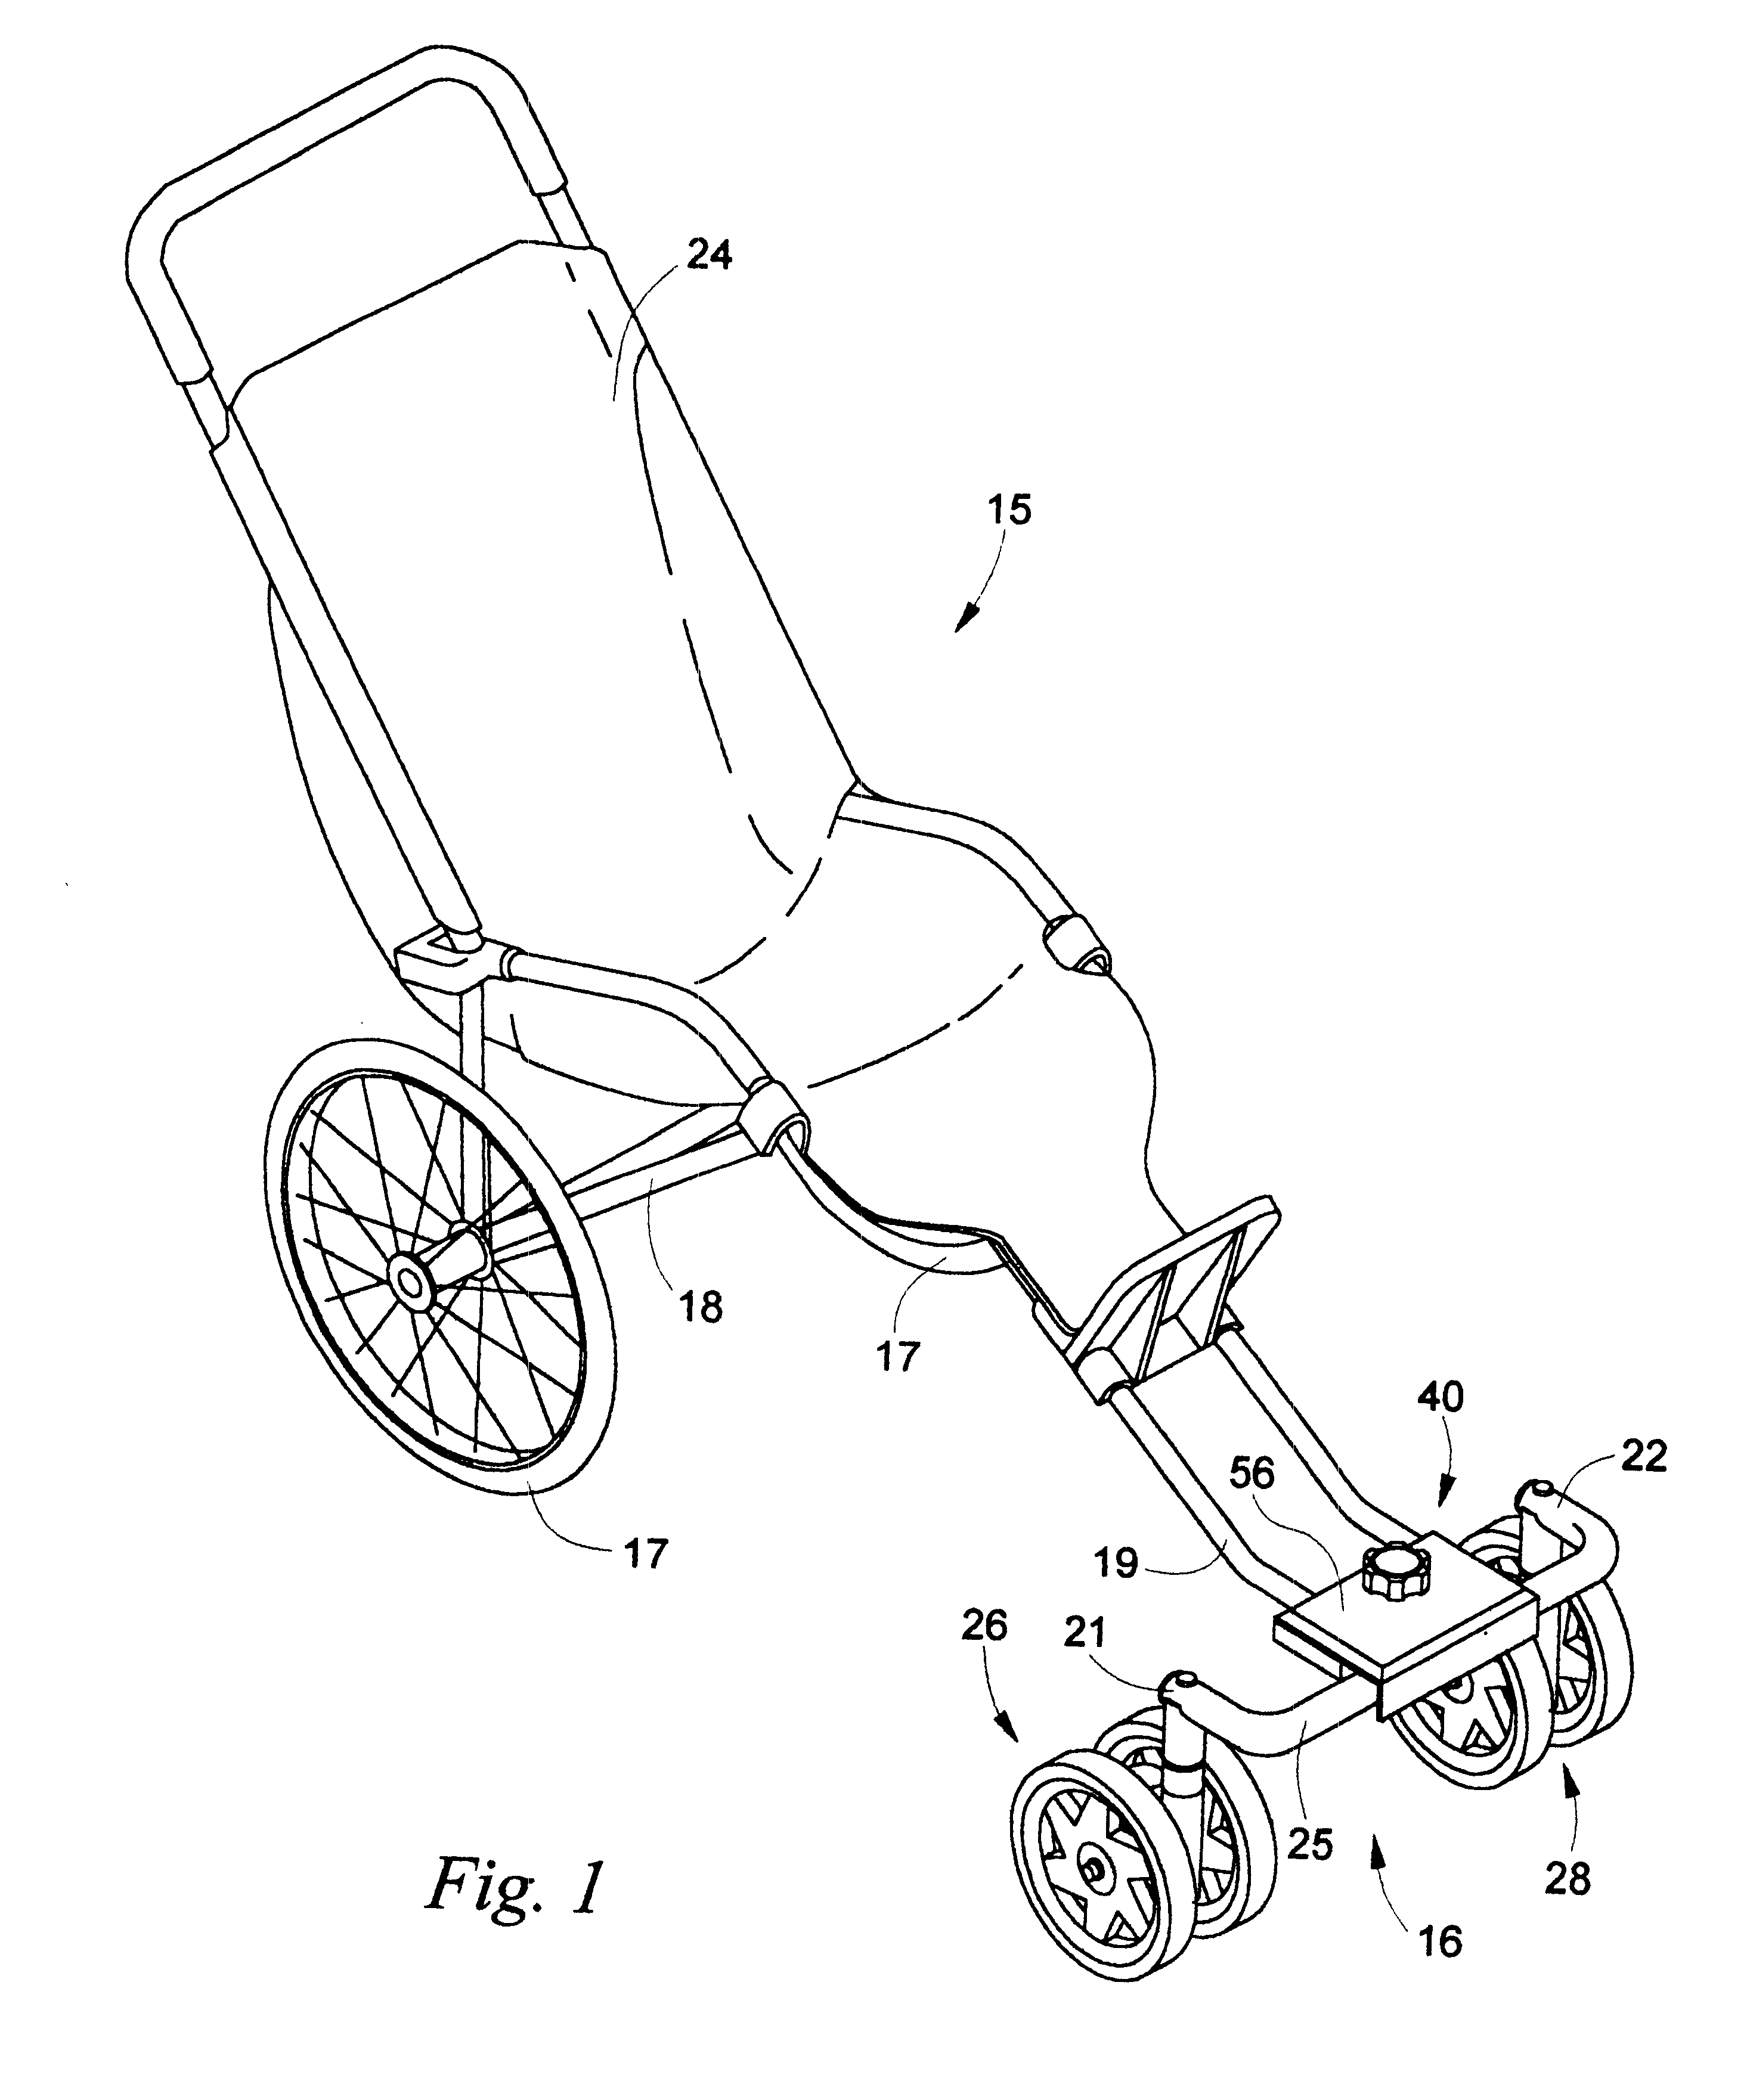 Add-on front wheel castors for jogging stroller